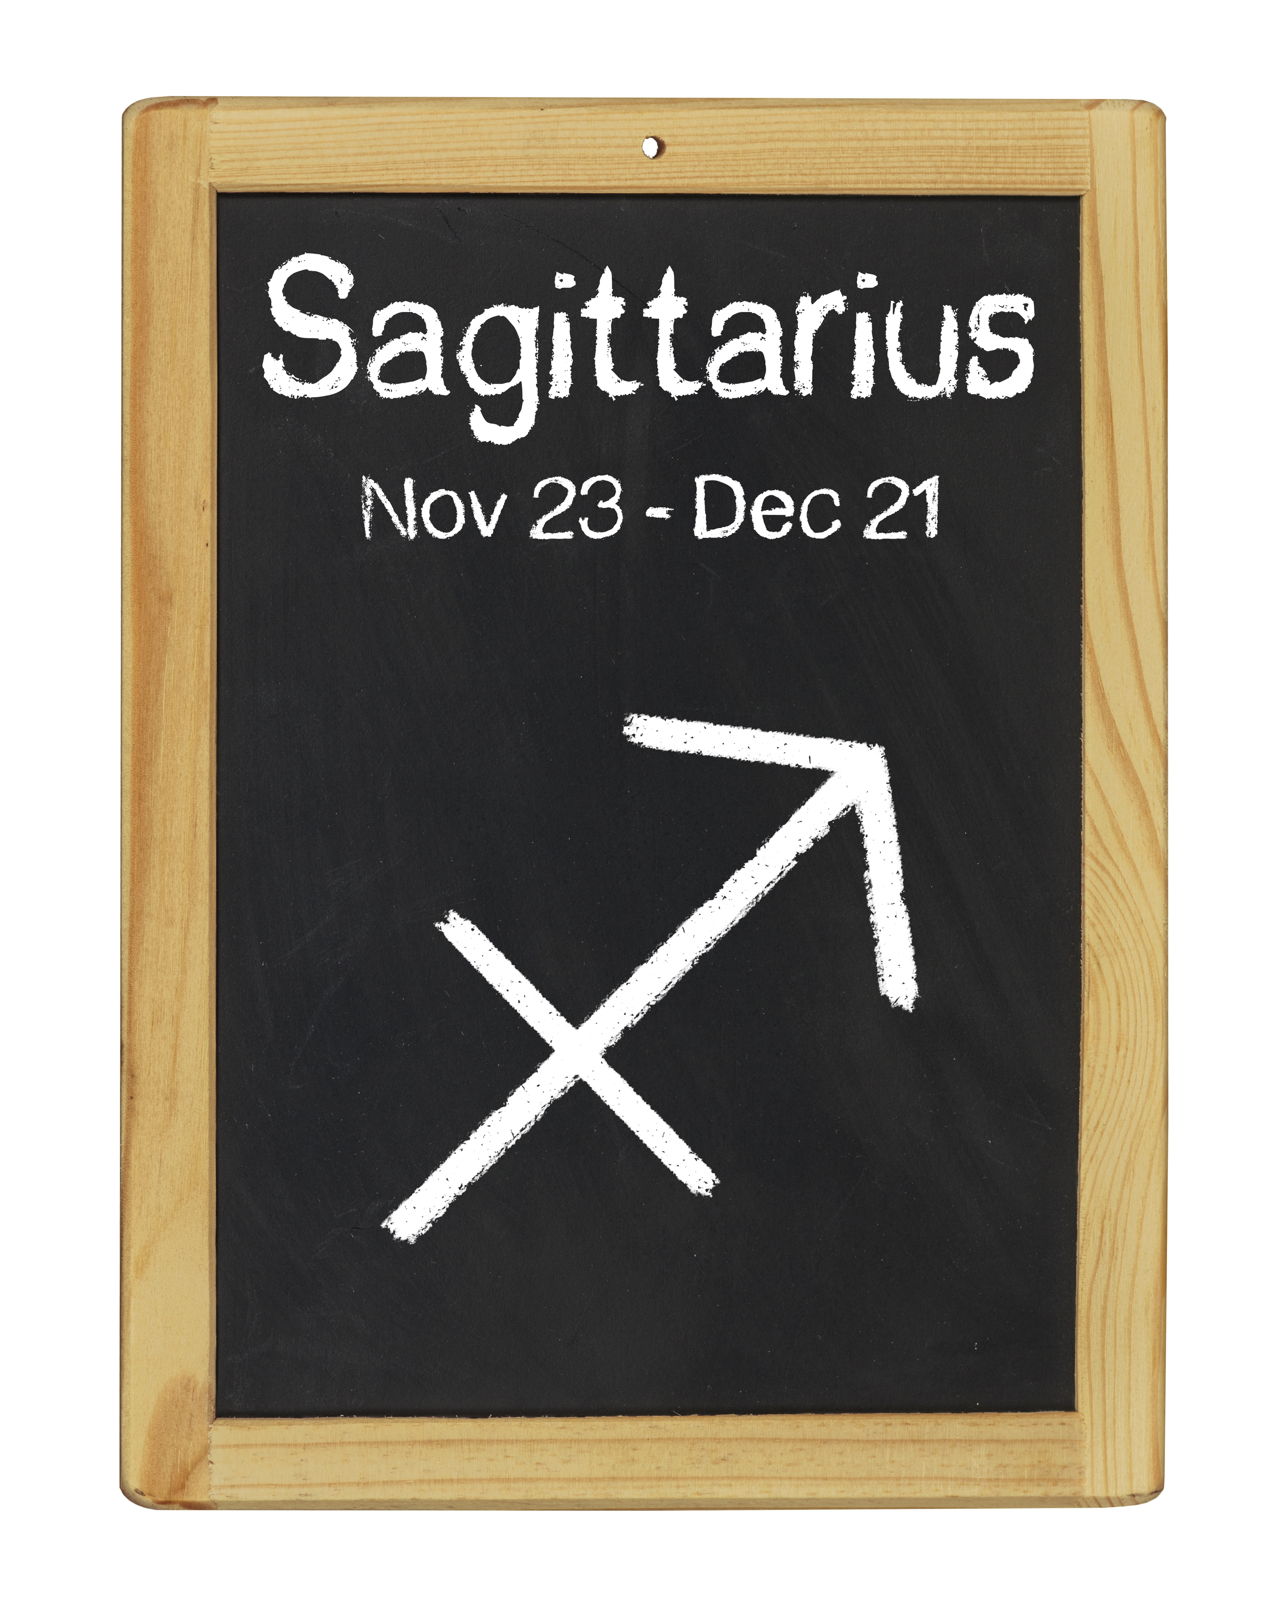 Sagitarius dates